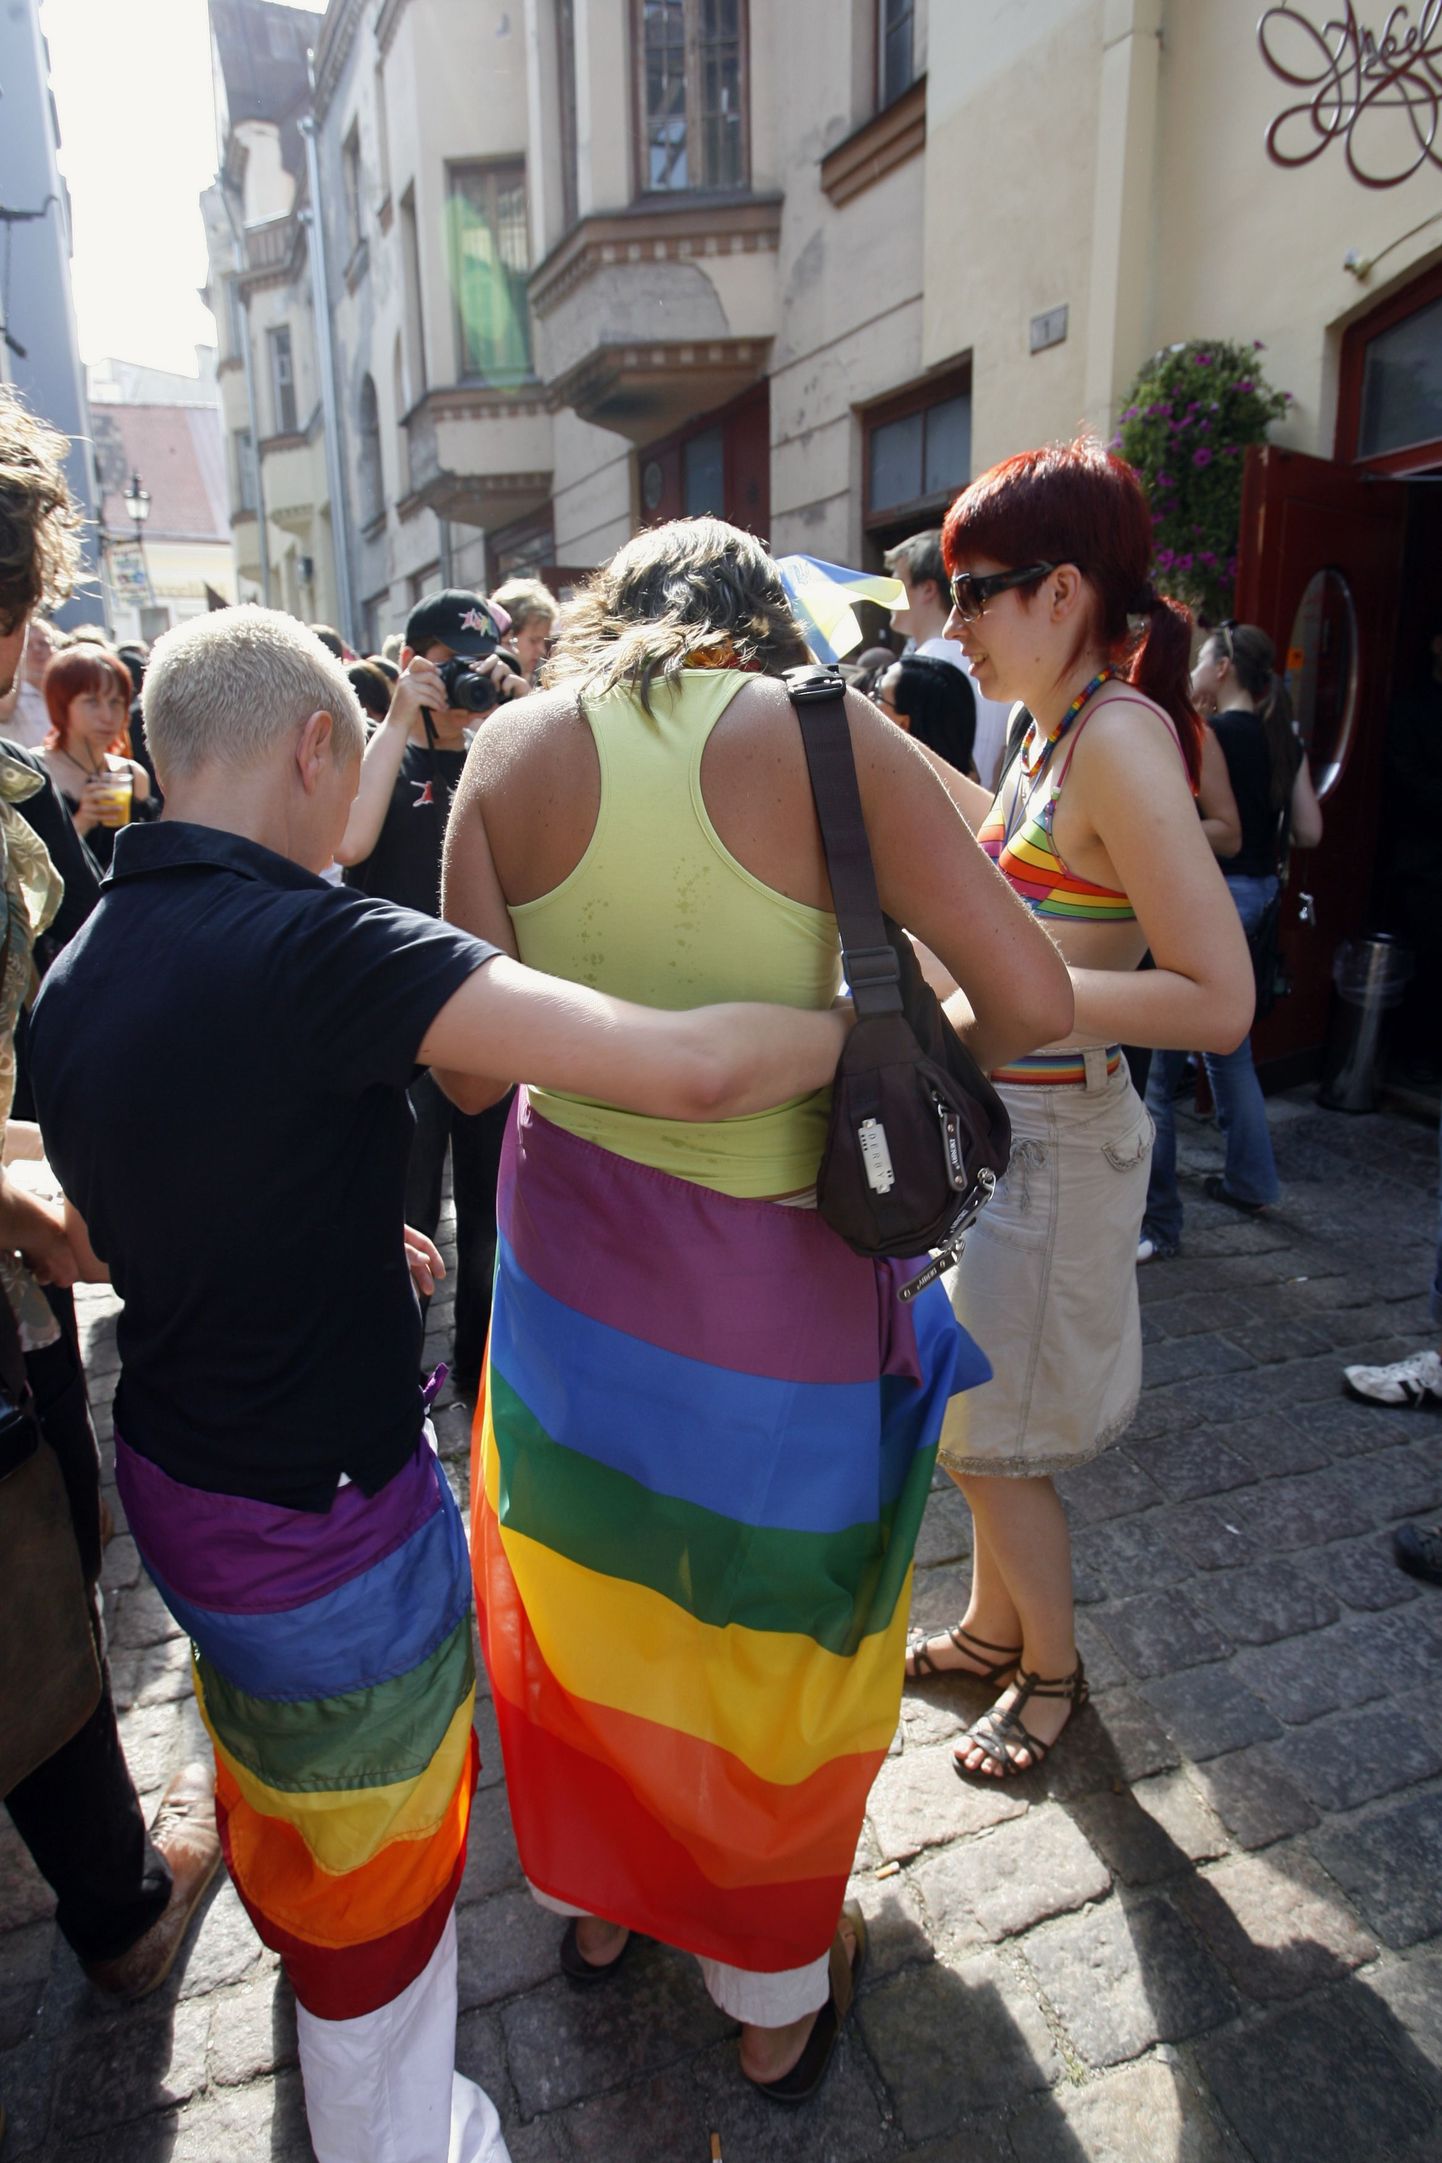 Pilt on tehtud eelmise aasta 11. augustil toimunud homoparaadi ajal.